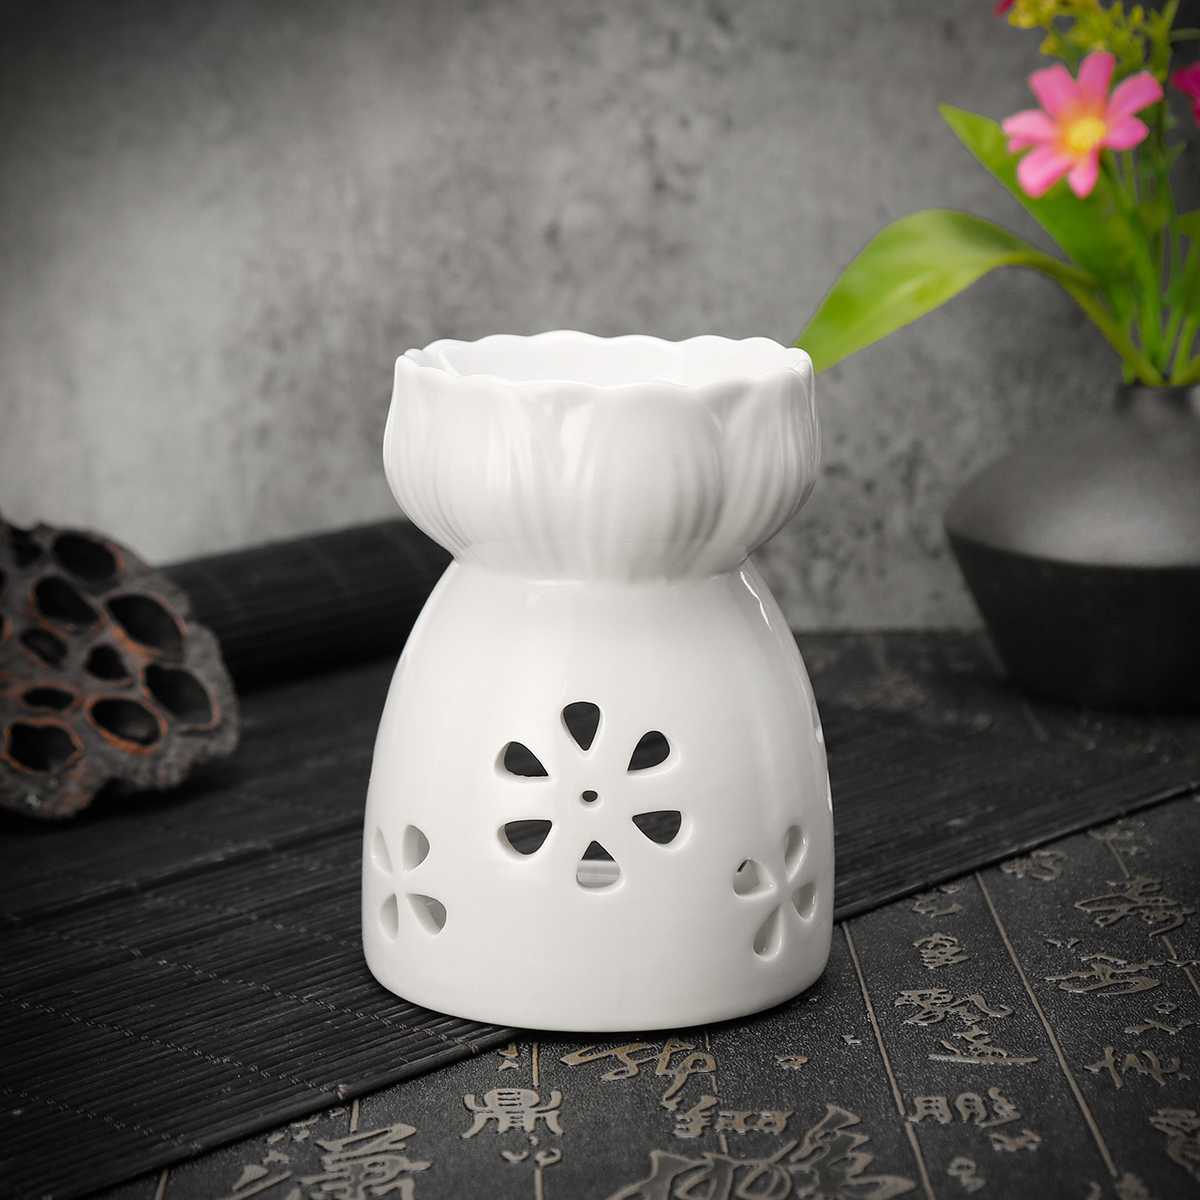 NEW Ceramic Candle Holder Oil Incense Burner Essential Aromatherapy Oil Burner Lamps Porcelain Home Living Room